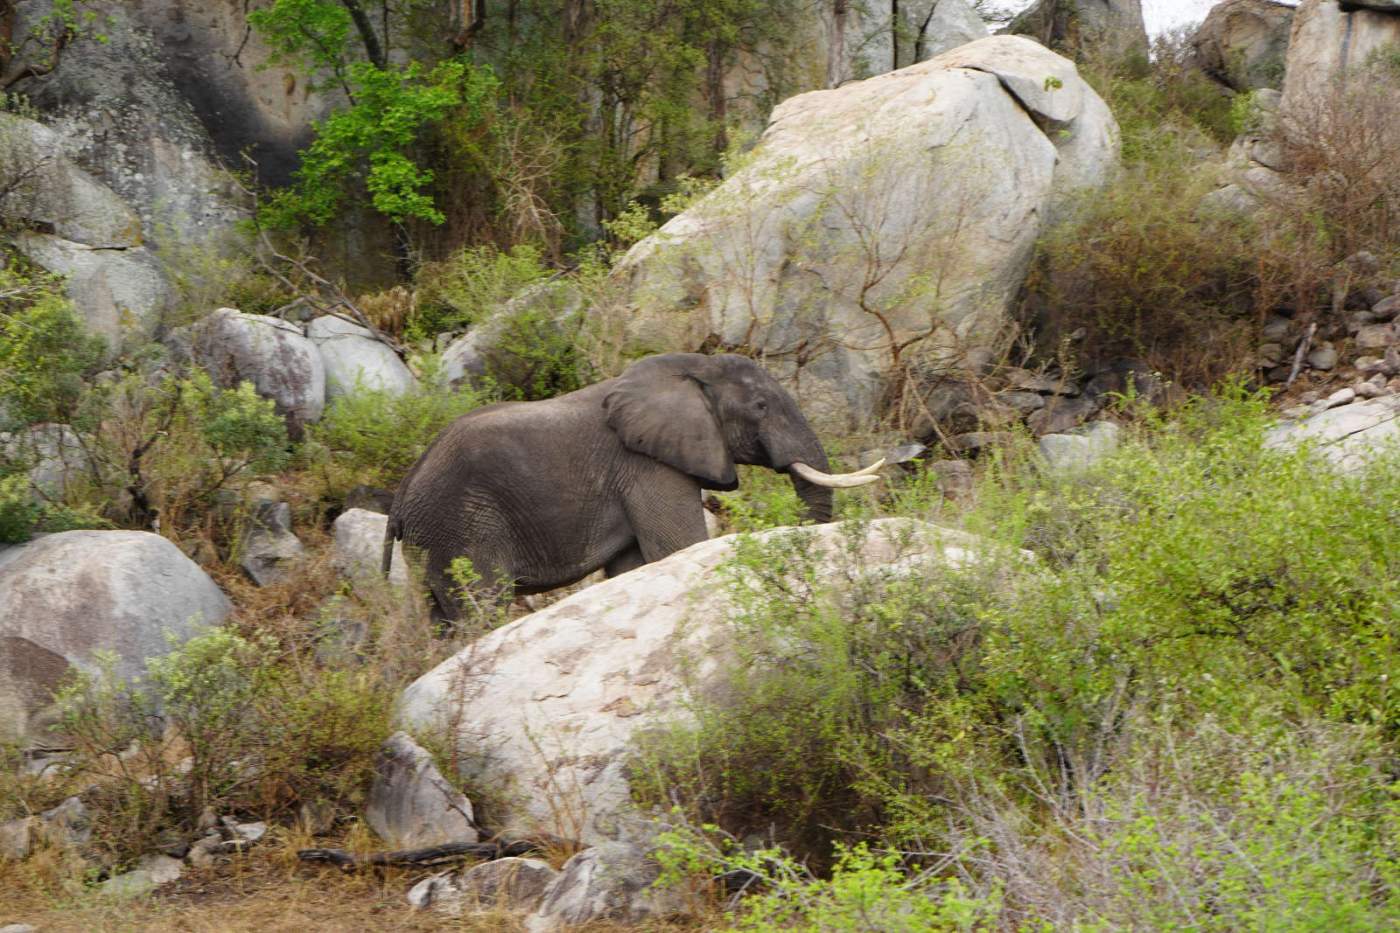 Der Addo Elephant Park ist der größte Nationalpark im Ostkap. Hier leben etwa 400 Elefanten, die wir auf unserer Motorradreise durch Südafrika besuchen werden.